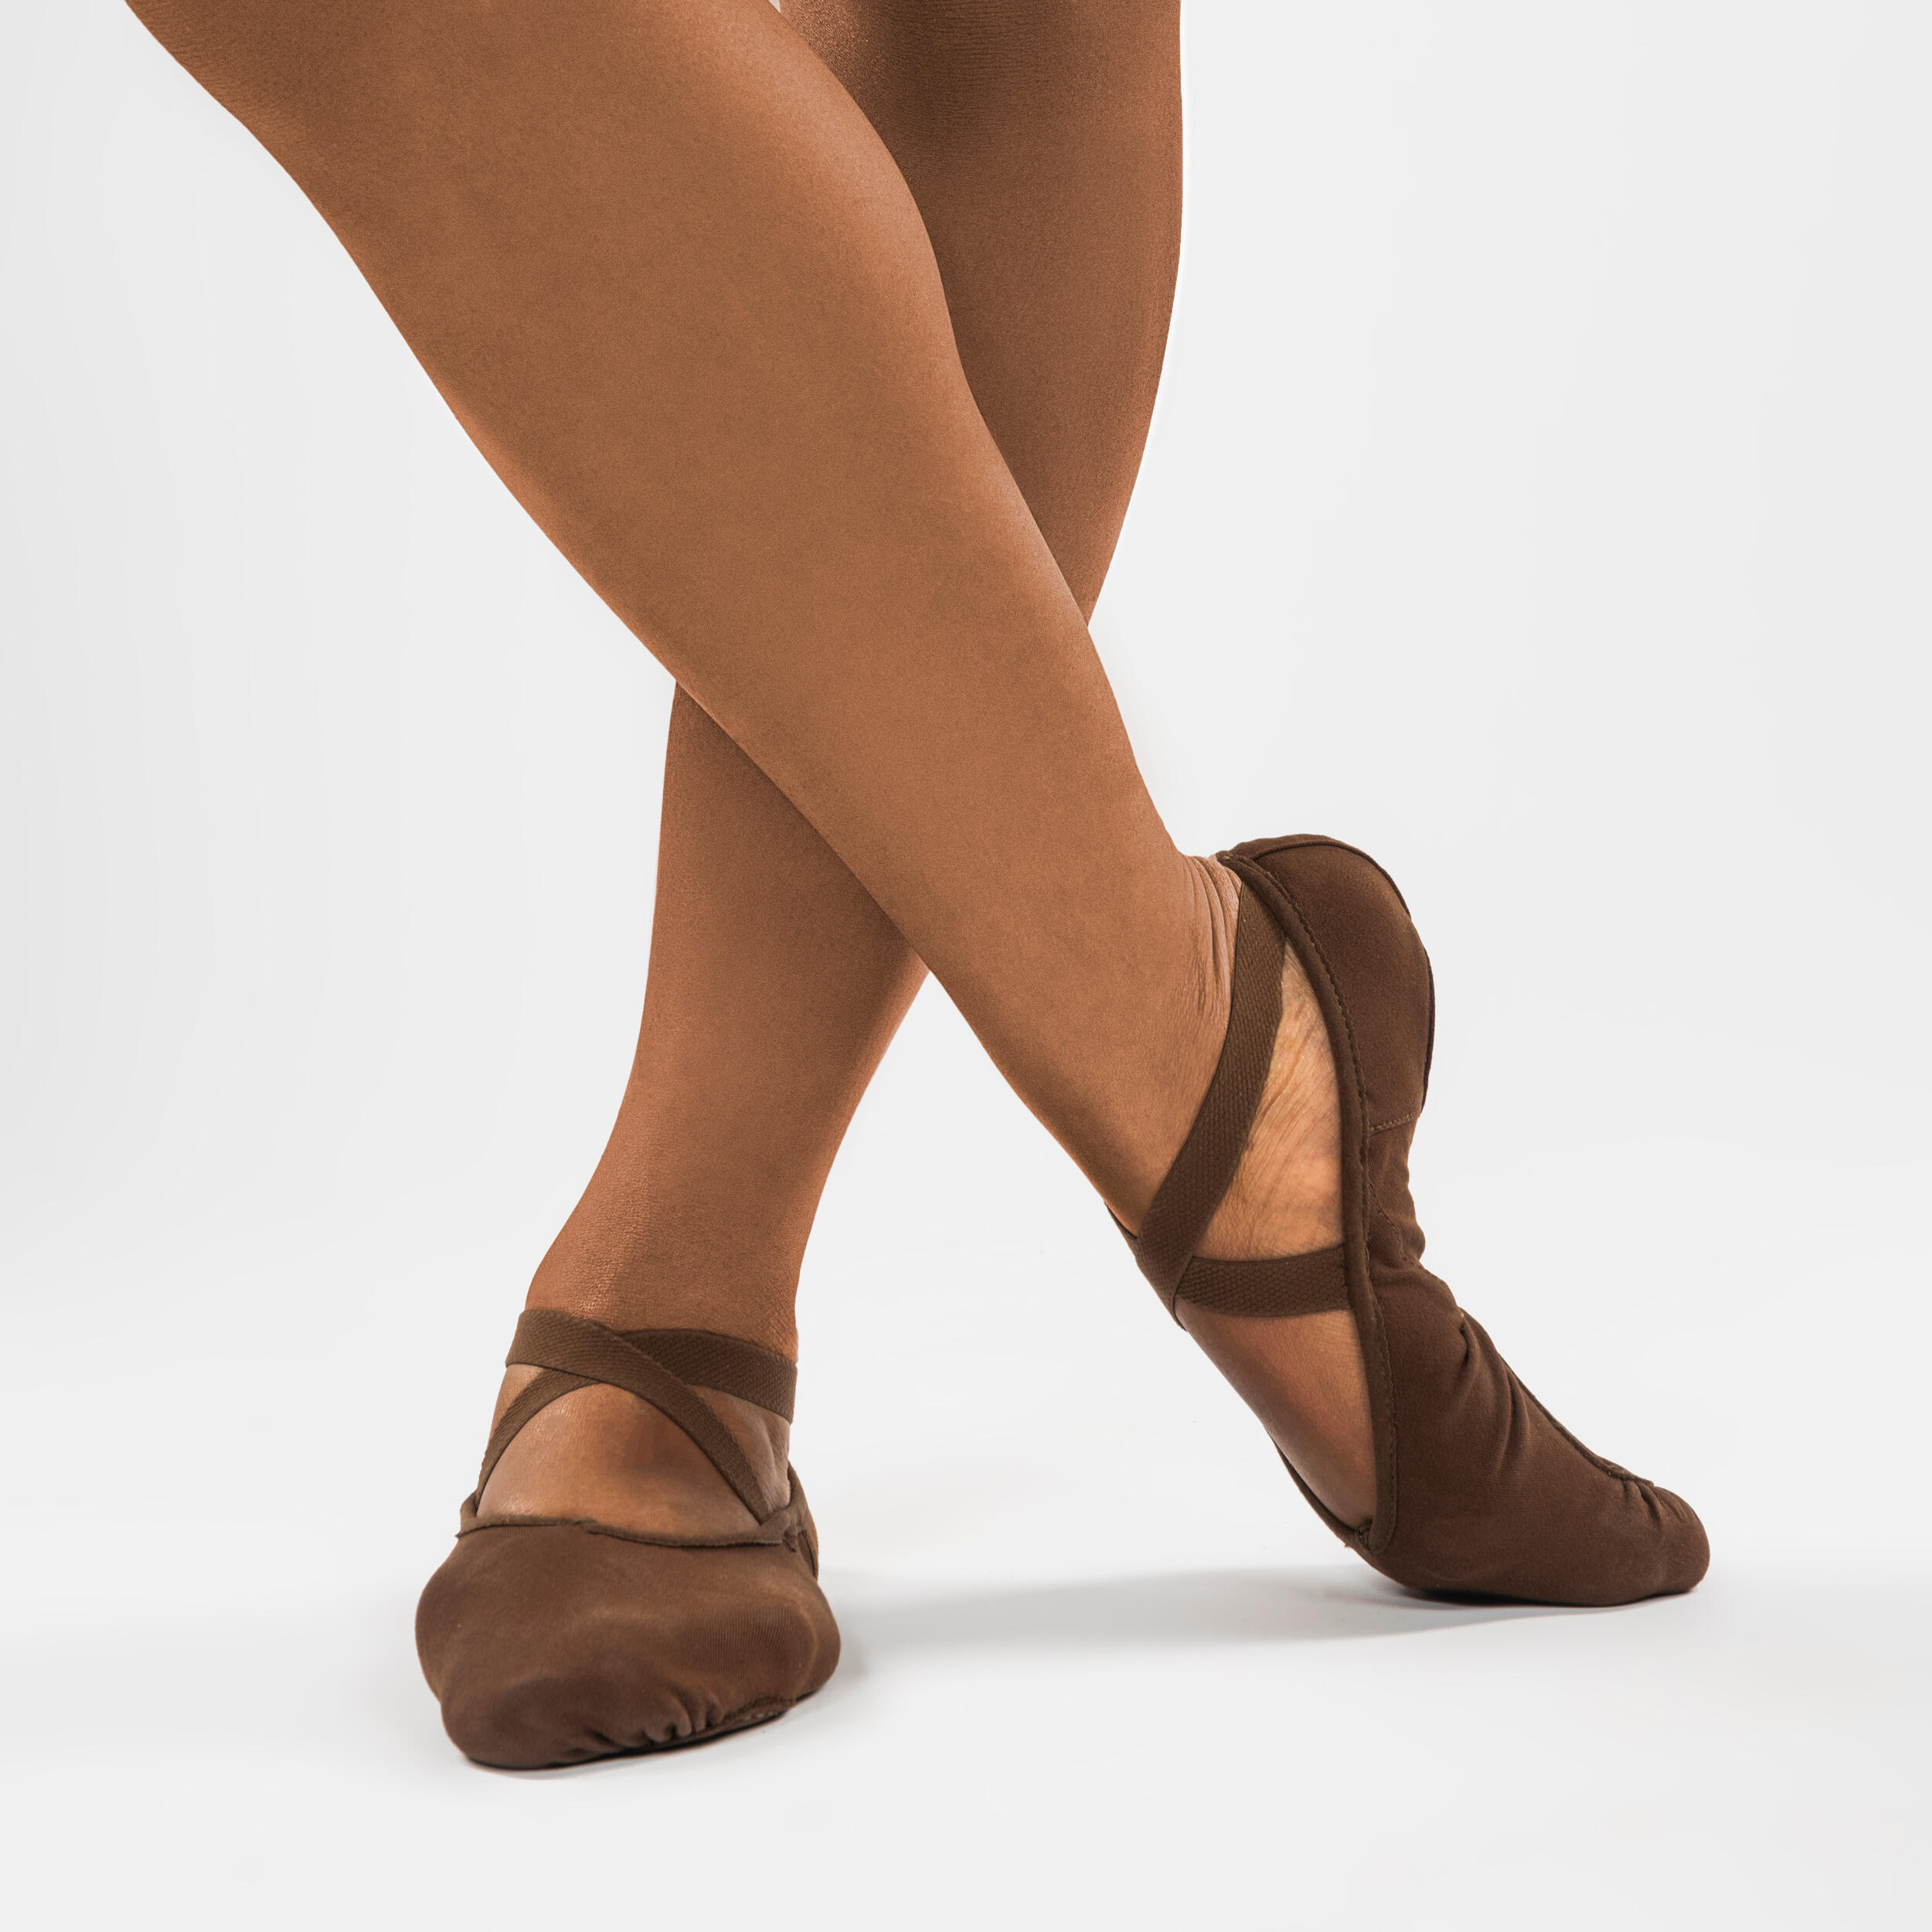 Split-Sole Stretch Canvas Demi-Pointe Ballet Shoes - Chocolate 6/6